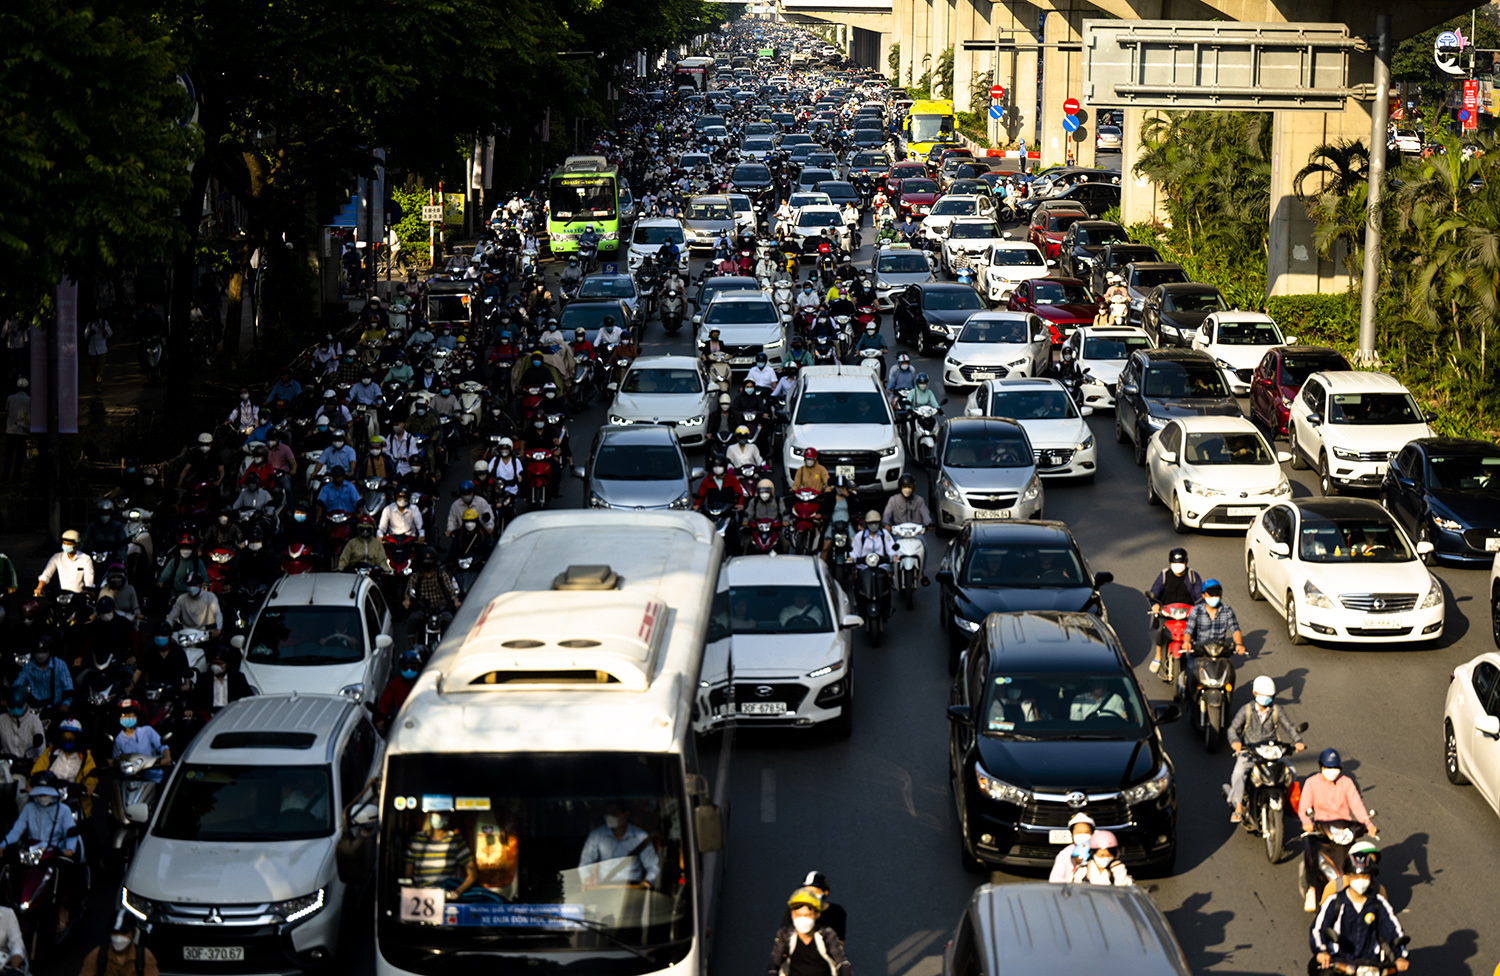 Hà Nội, TP.HCM lại tắc đường kinh hoàng sau nghỉ lễ, người dân chật vật tới nơi làm việc - 3